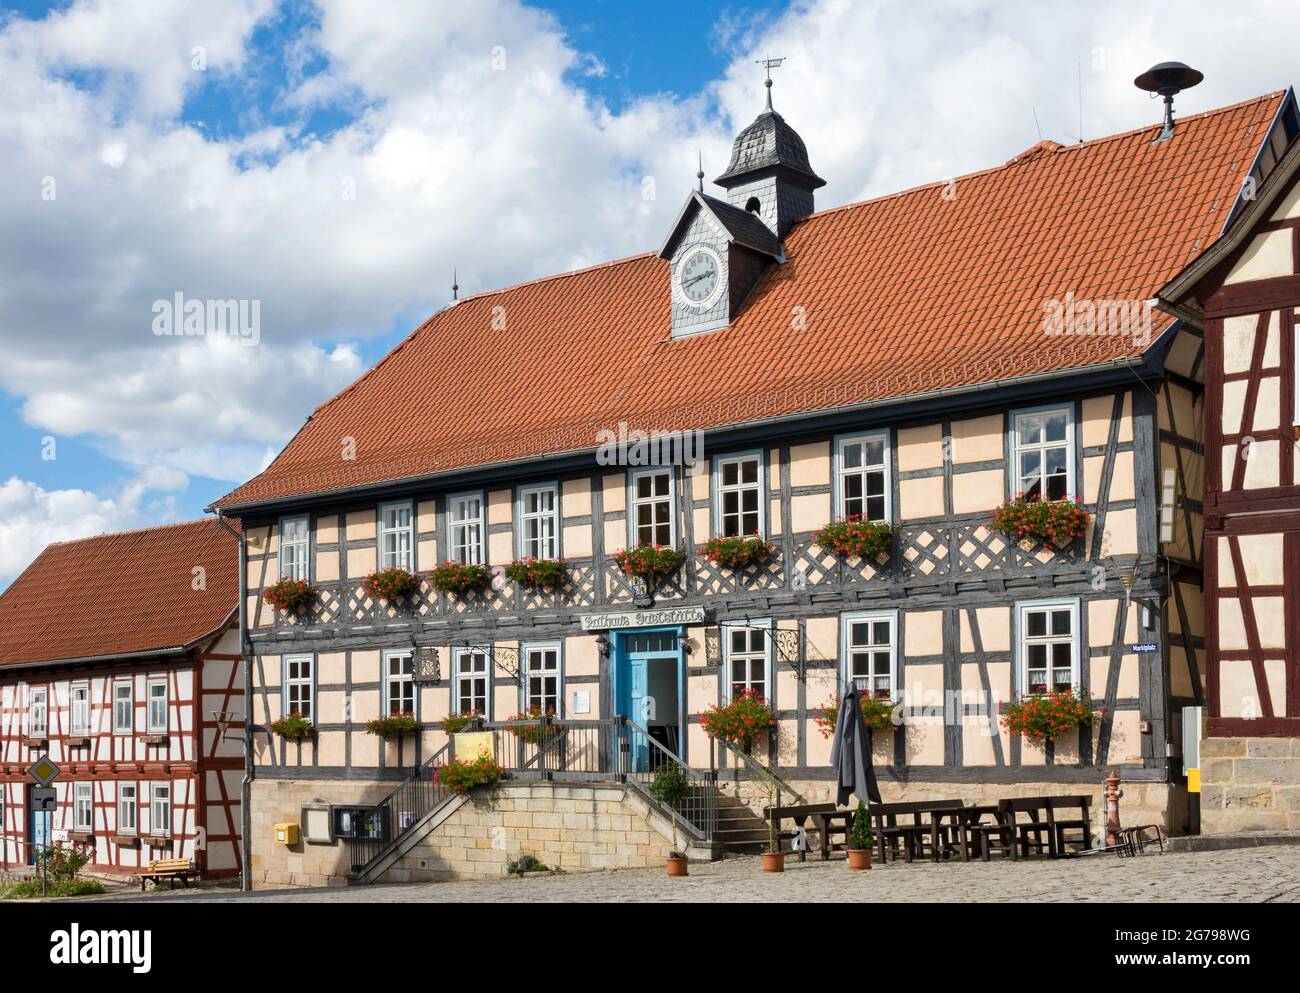 Ummerstadt ist (2019) die kleinste Stadt Thüringens. Die historische Altstadt von Ummerstadt, in der sich viele Fachwerkhäuser befinden, ist ein denkmalgeschütztes Gebäude. Besonders interessant ist der Marktplatz mit dem historischen Rathaus, das heute als Restaurant genutzt wird. Stockfoto